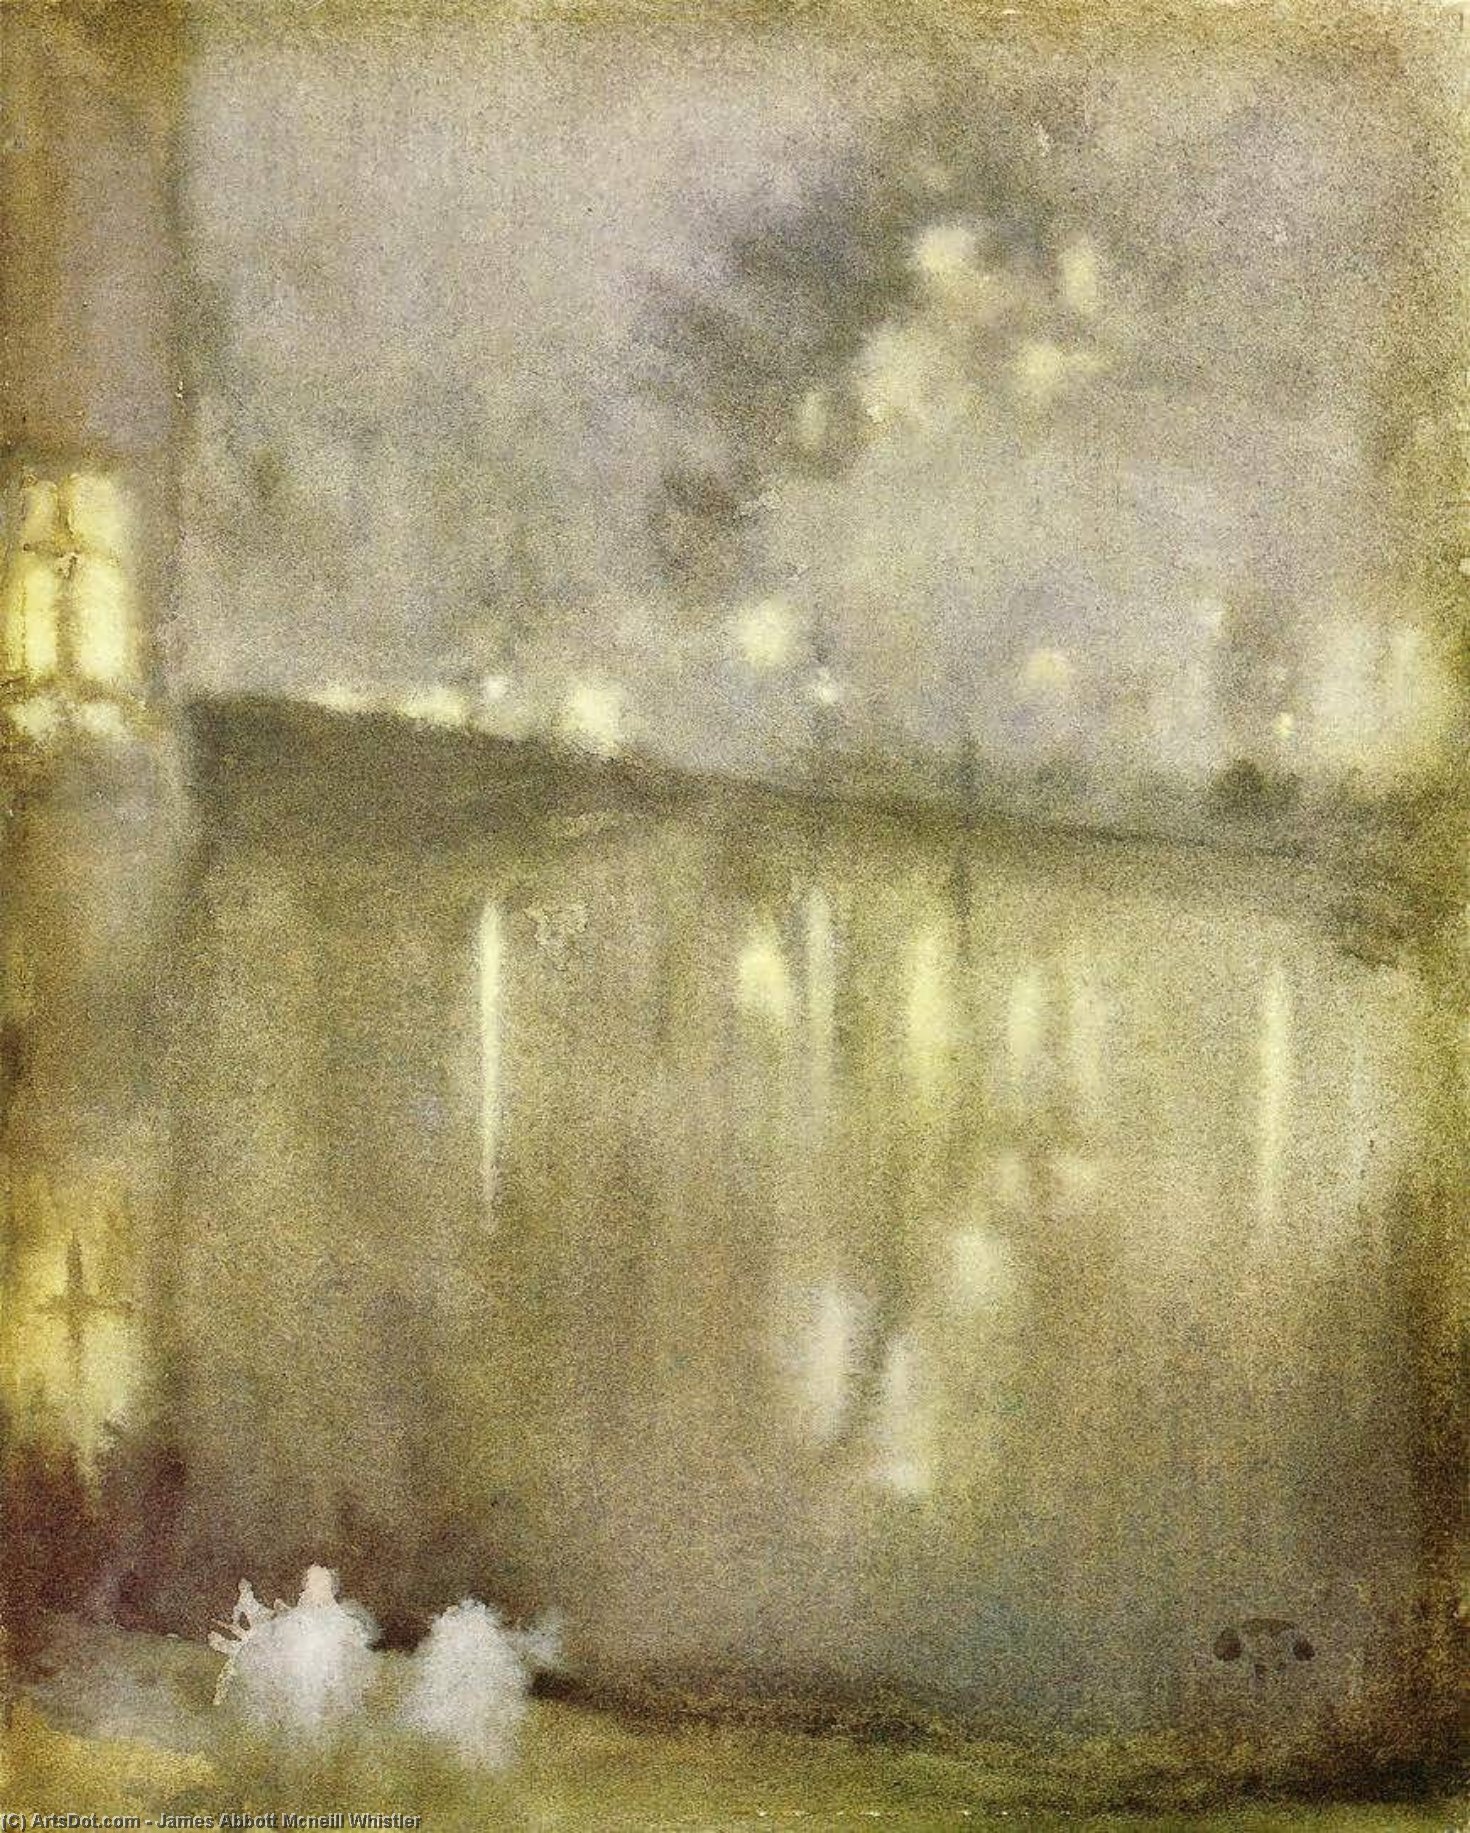 Bestellen Kunstreproduktionen Nocturne: Grau und Gold - Canal, Holland, 1883 von James Abbott Mcneill Whistler (1834-1903, United States) | ArtsDot.com